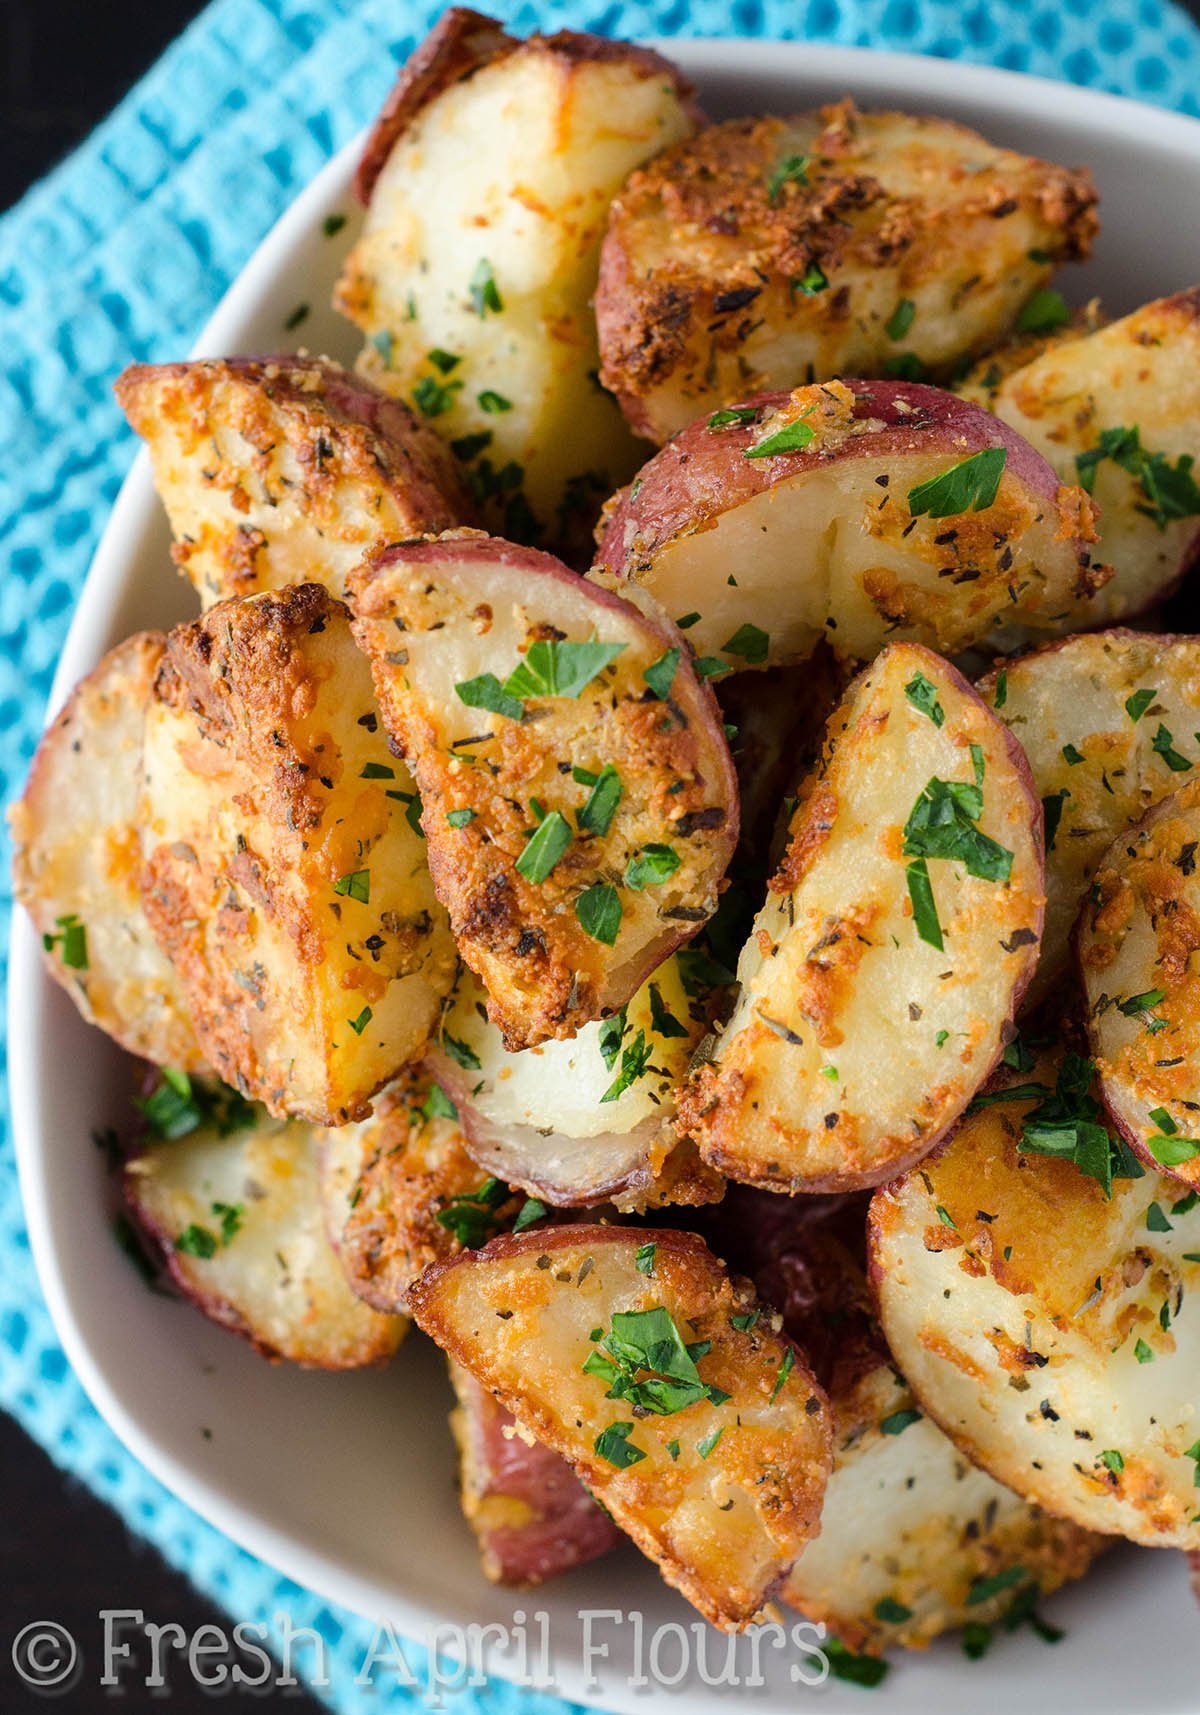 Рецепт печеного картофеля. Запеченный картофель. Печеный картофель. Картошка в духовке. Вкуснейшая картошка в духовке.